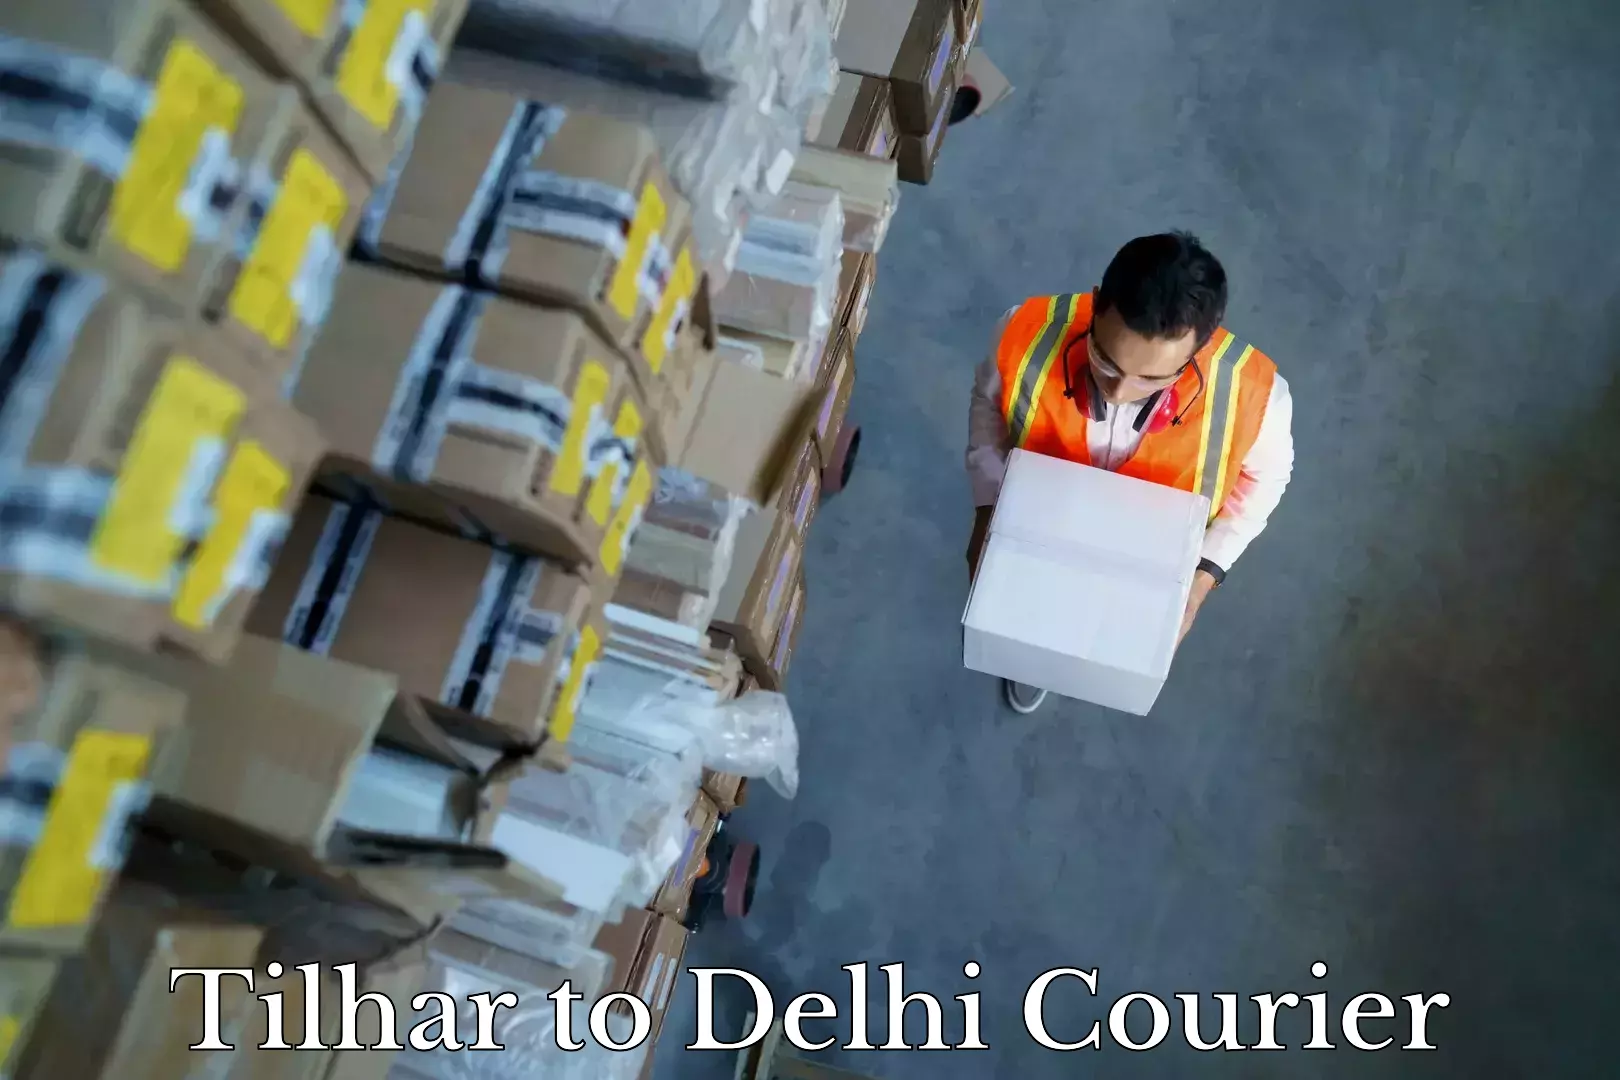 Furniture moving experts Tilhar to Delhi